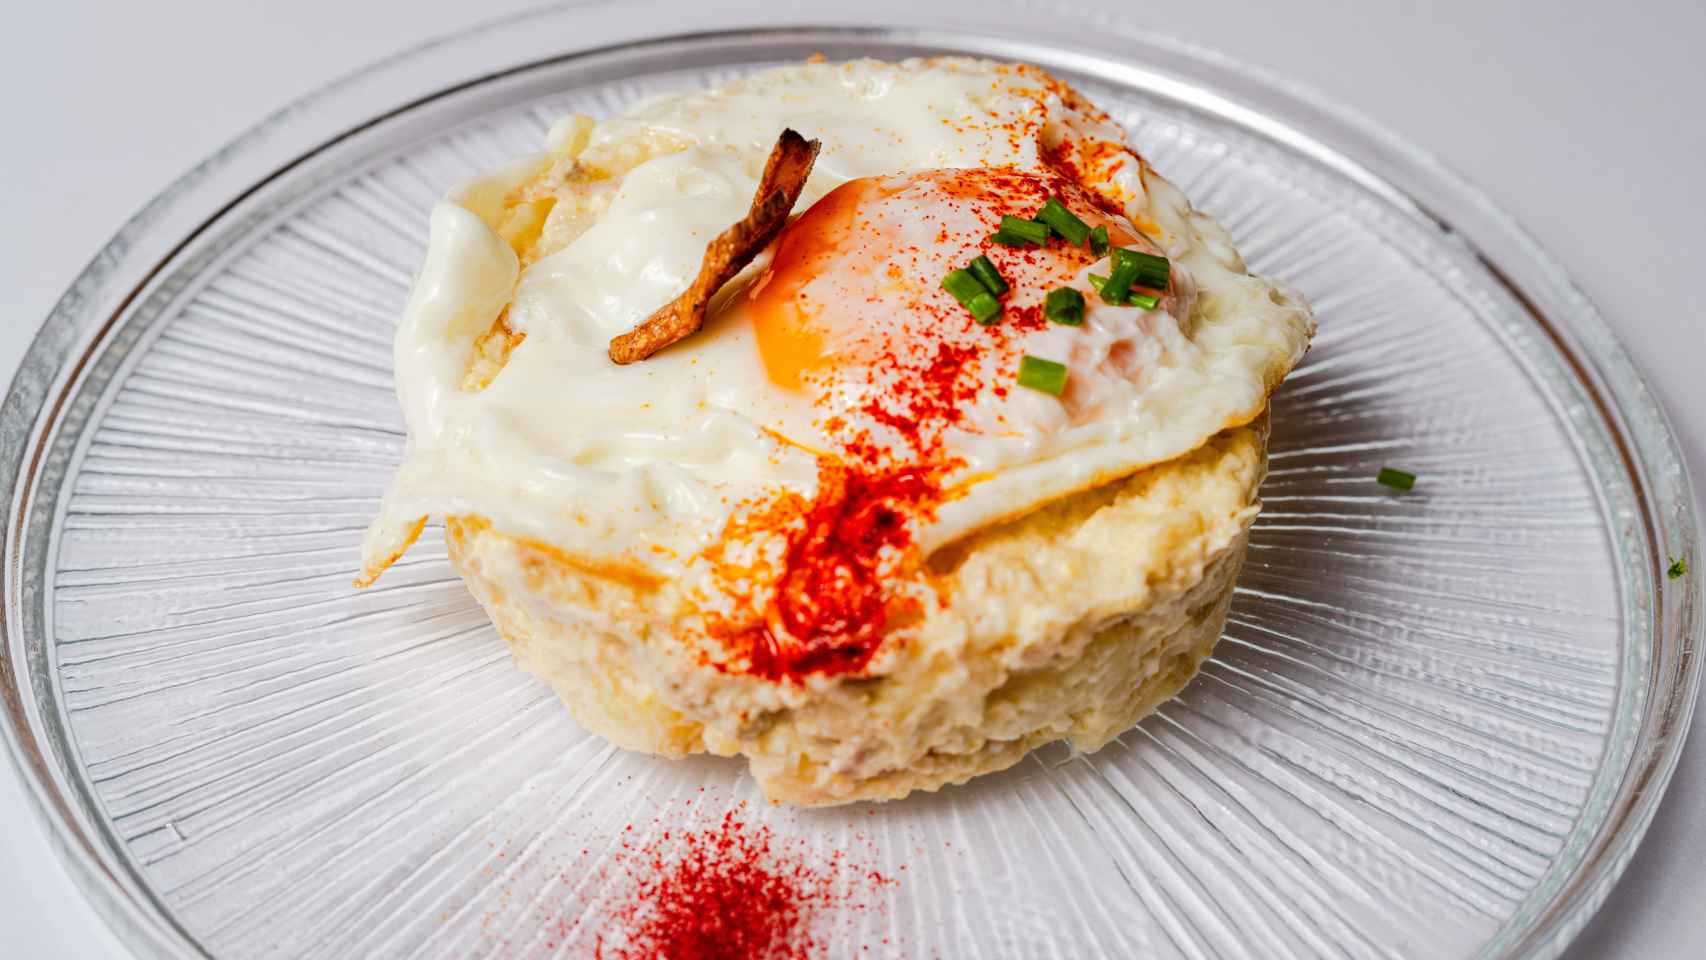 La ensaladilla rusa con huevo frito del restaurante Egun-On.